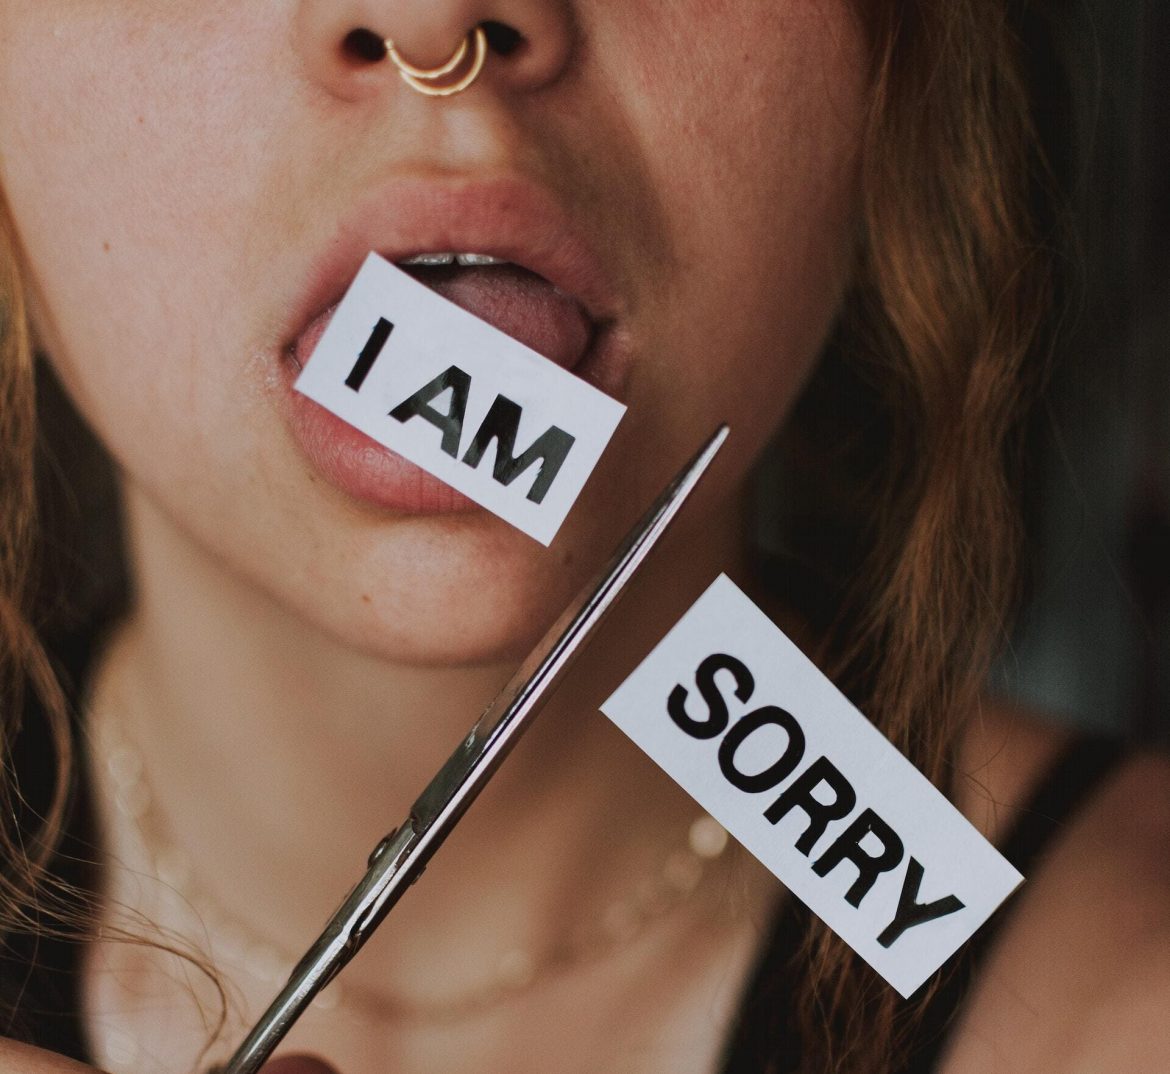 Aber eine Entschuldigung, zu der wir nach einem Vertrauensbruch und Fehler greifen, kann manchmal sogar Schaden anrichten